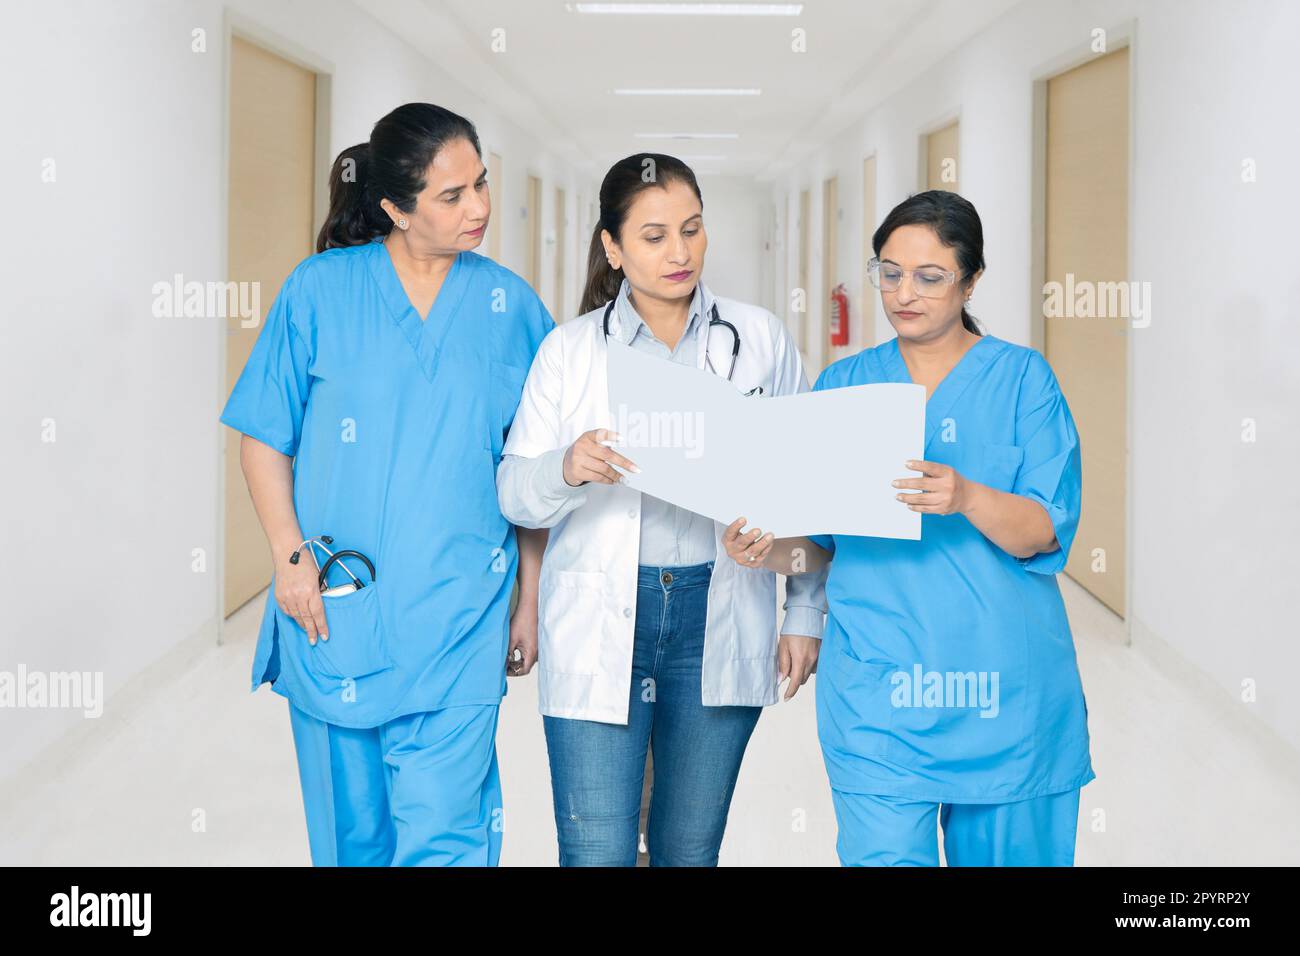 Medico femminile indiano e personale infermieristico discutere rapporto medico in corridoio ospedale, concetto di assistenza sanitaria. Foto Stock